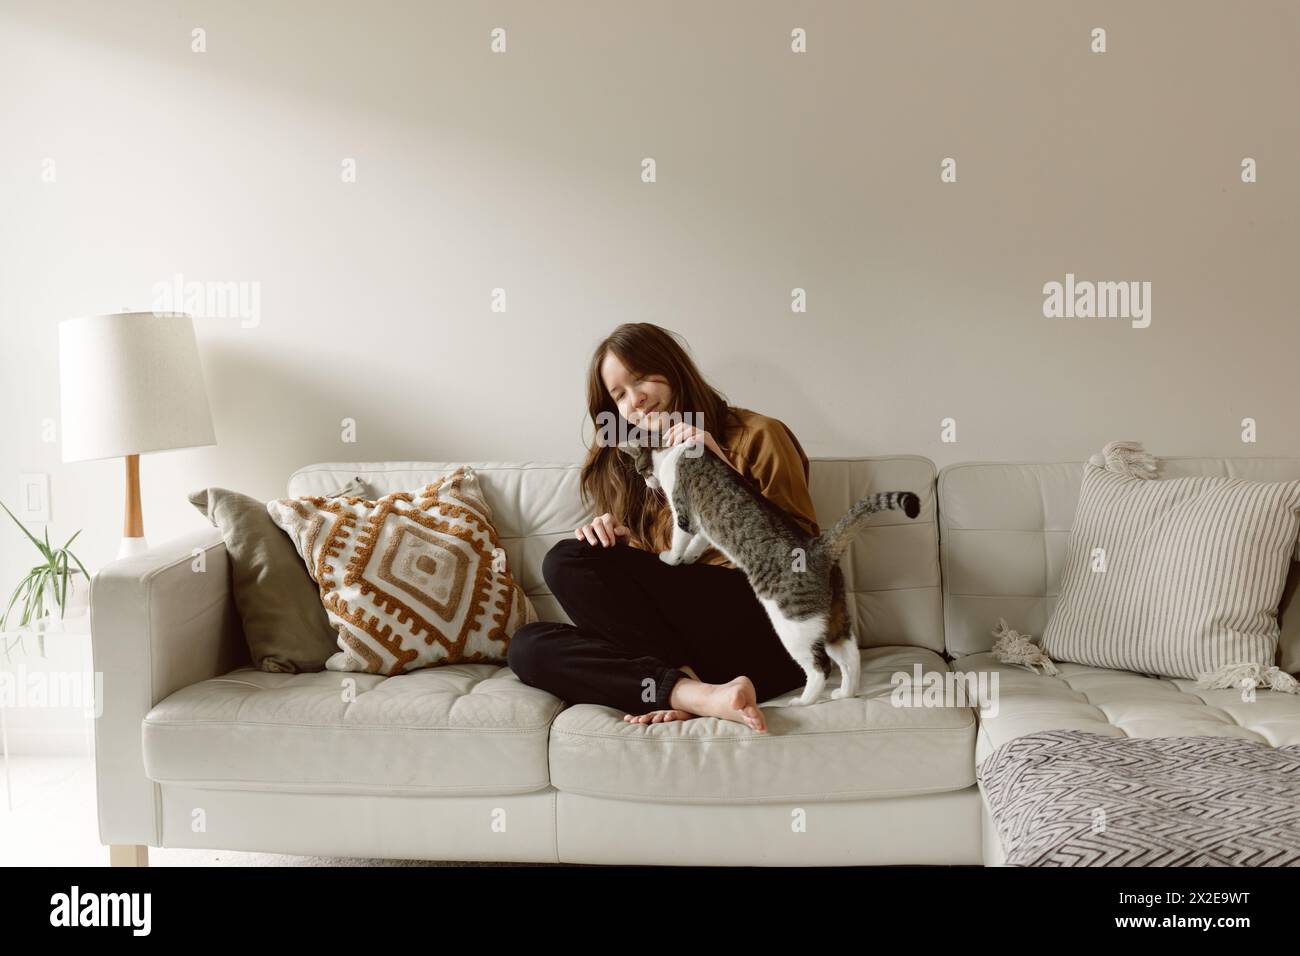 La donna accarezza il gatto sul divano davanti a un muro vuoto Foto Stock